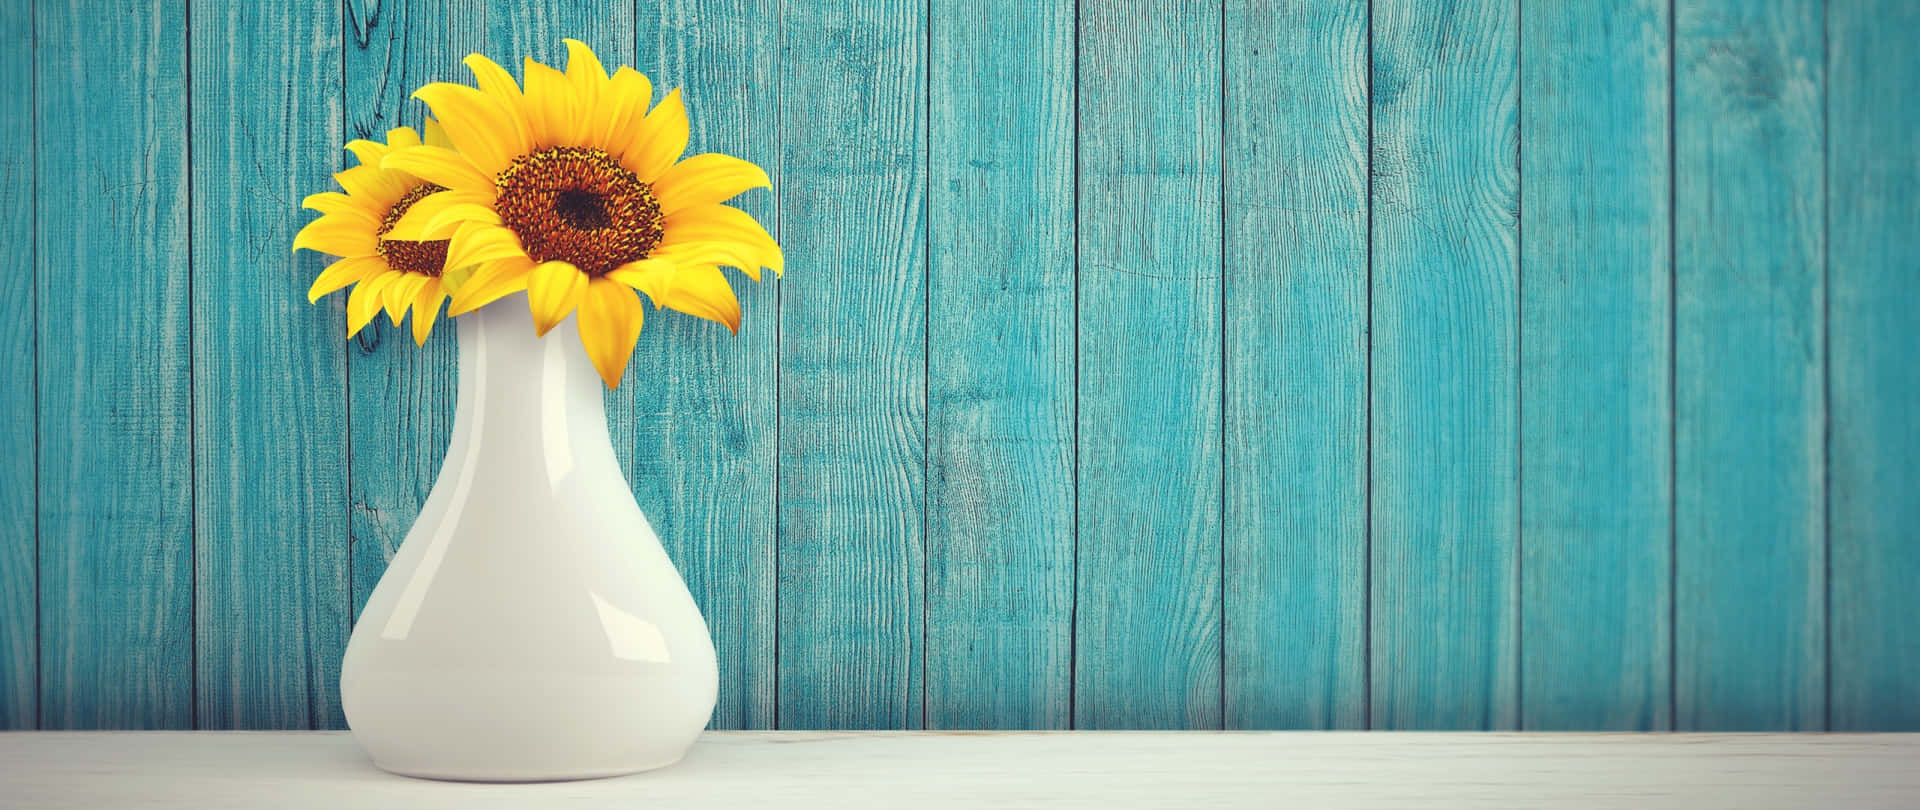 Sunflowersin White Vaseon Blue Background Wallpaper